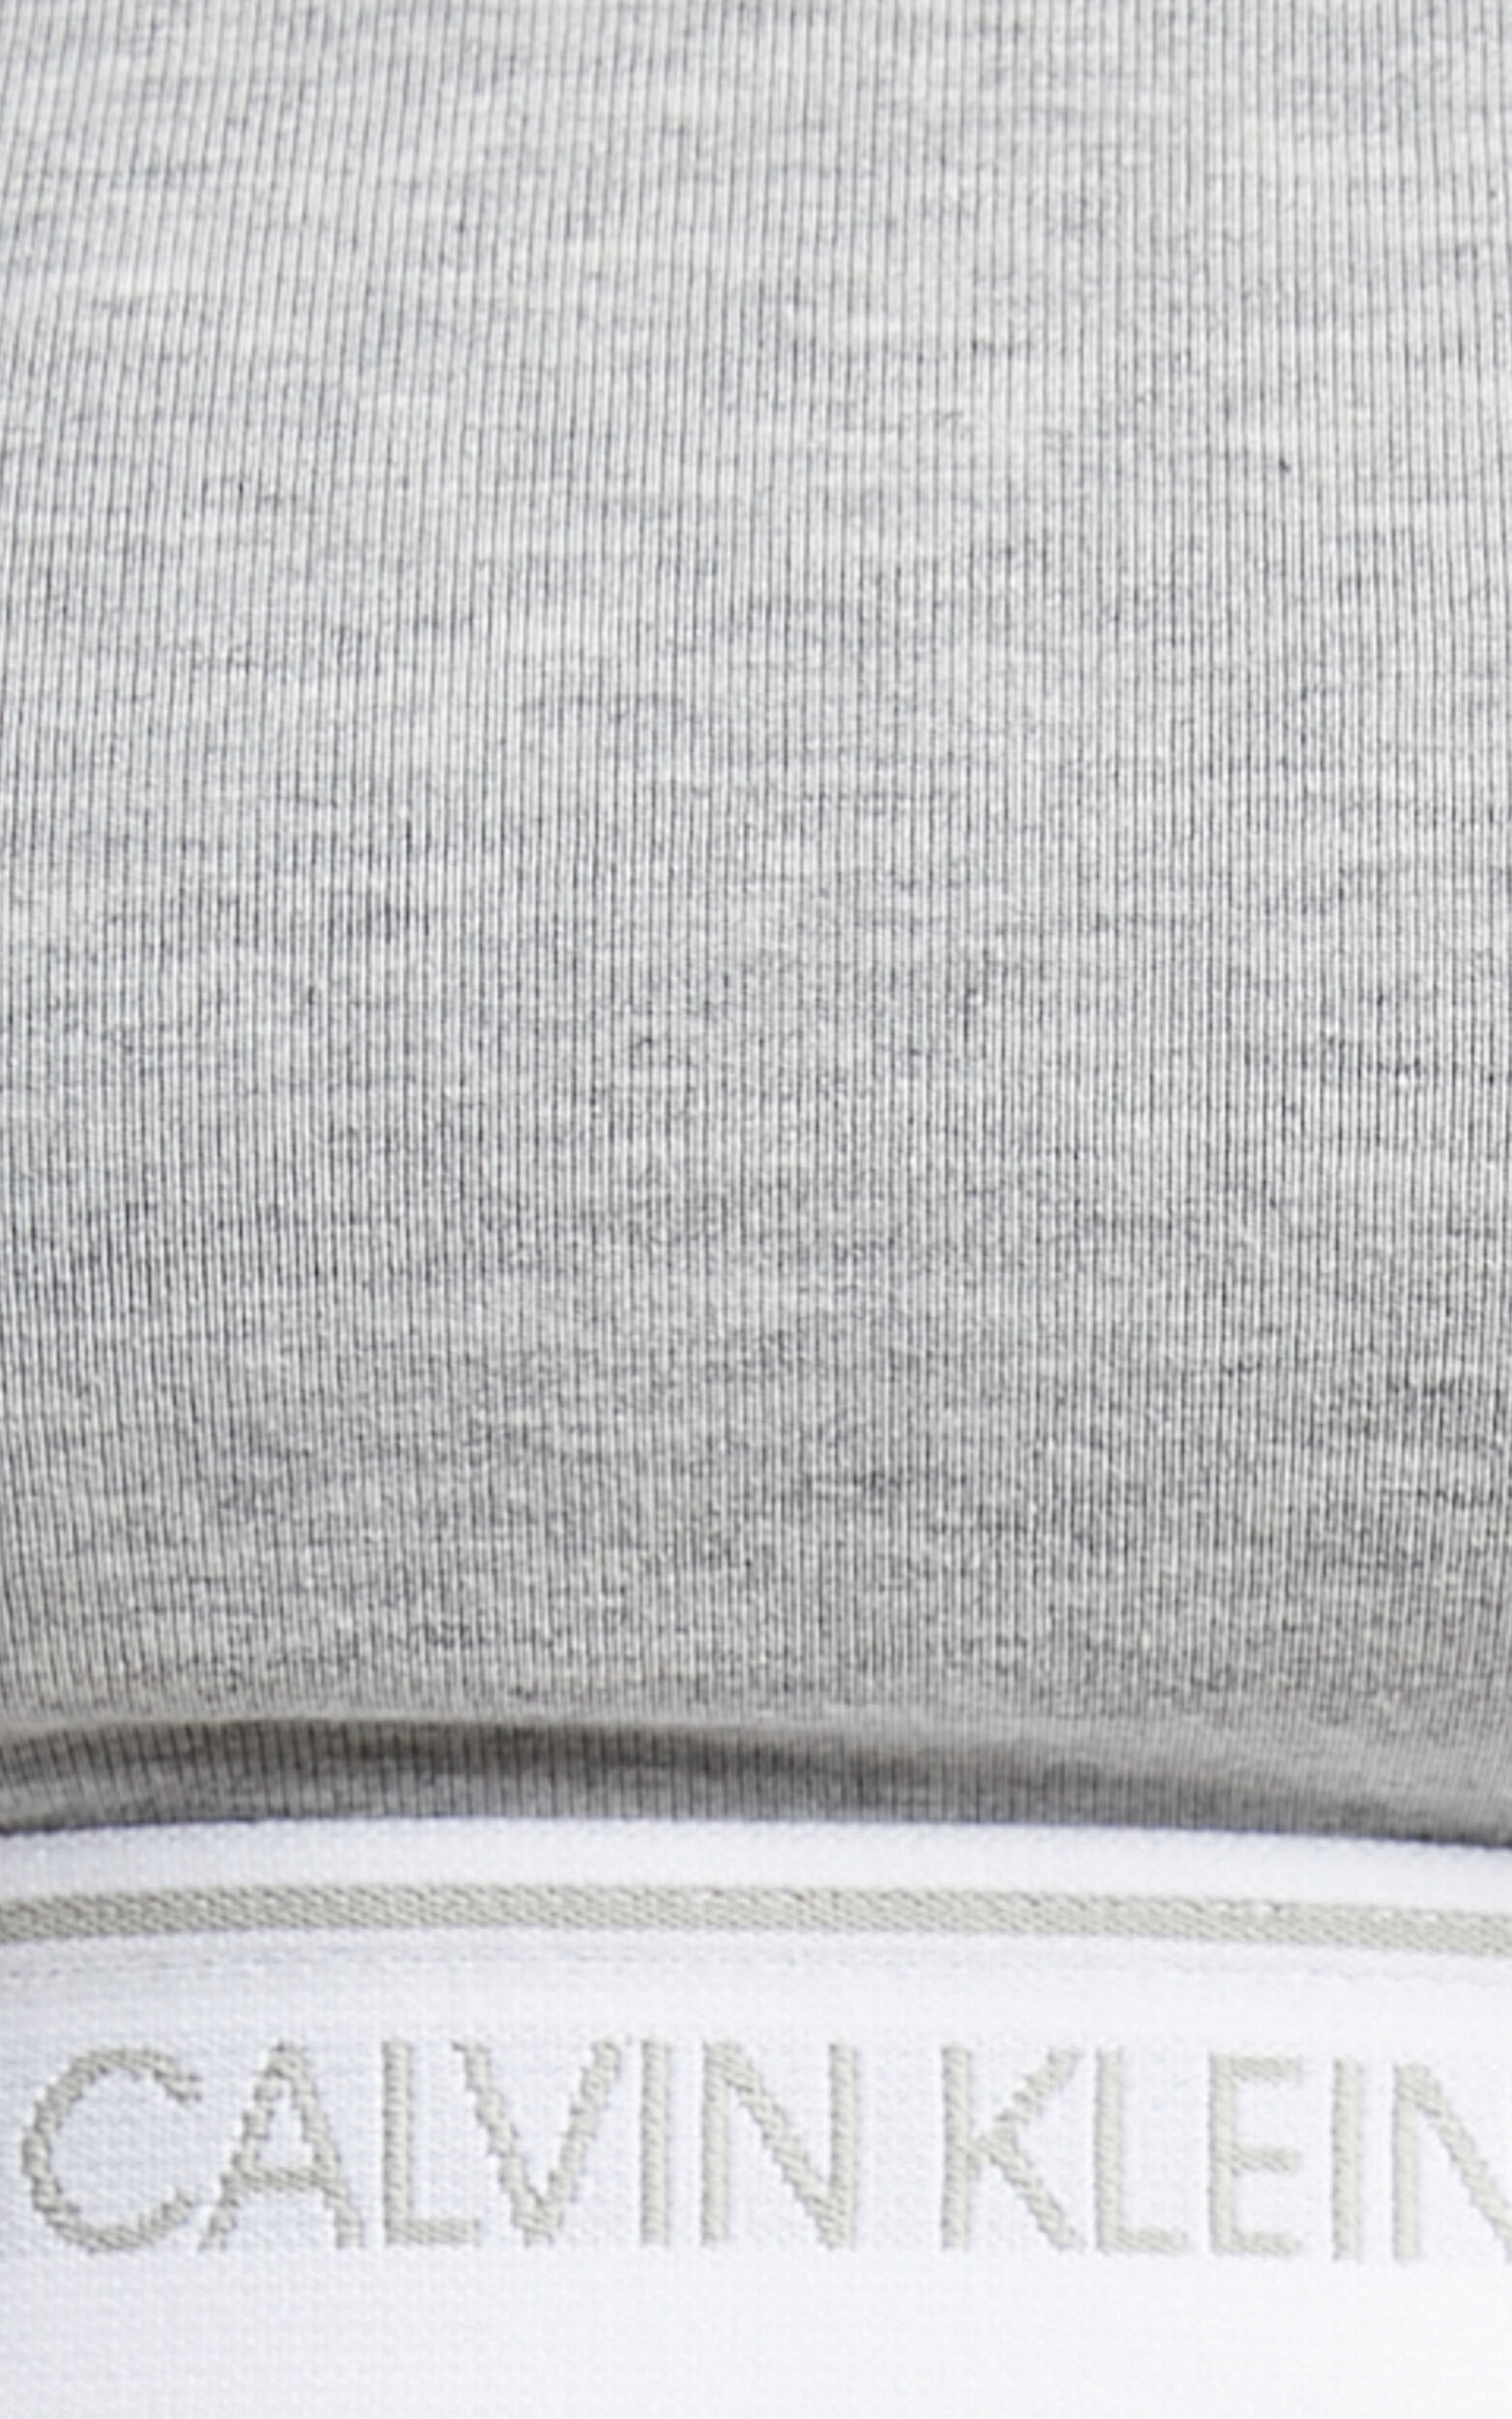 Calvin Klein CK One Cotton unlined bralette in grey